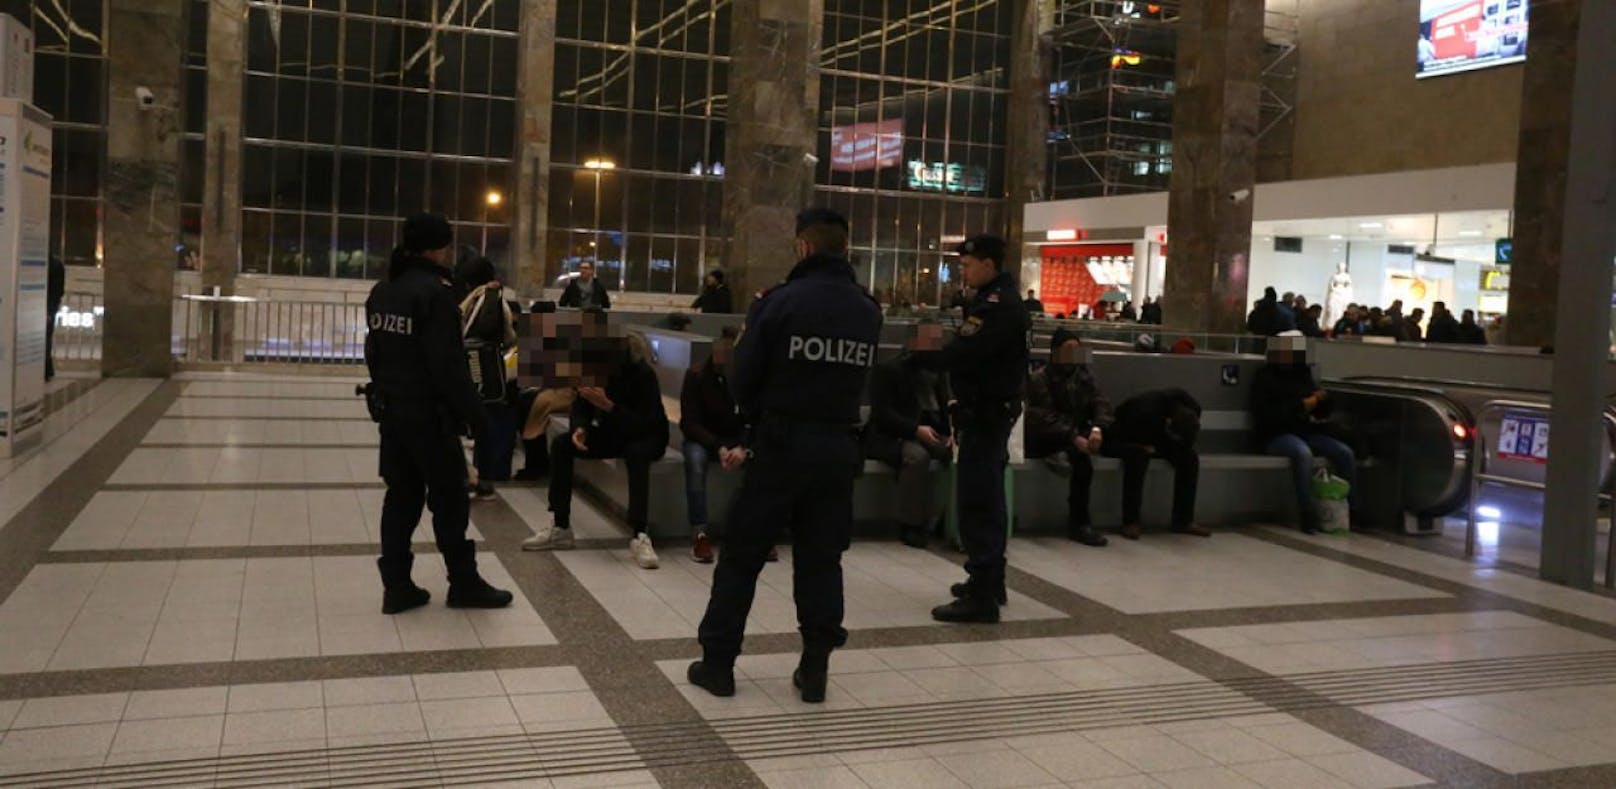 Lokalaugenschein mit Polizei am Wiener Westbahnhof.